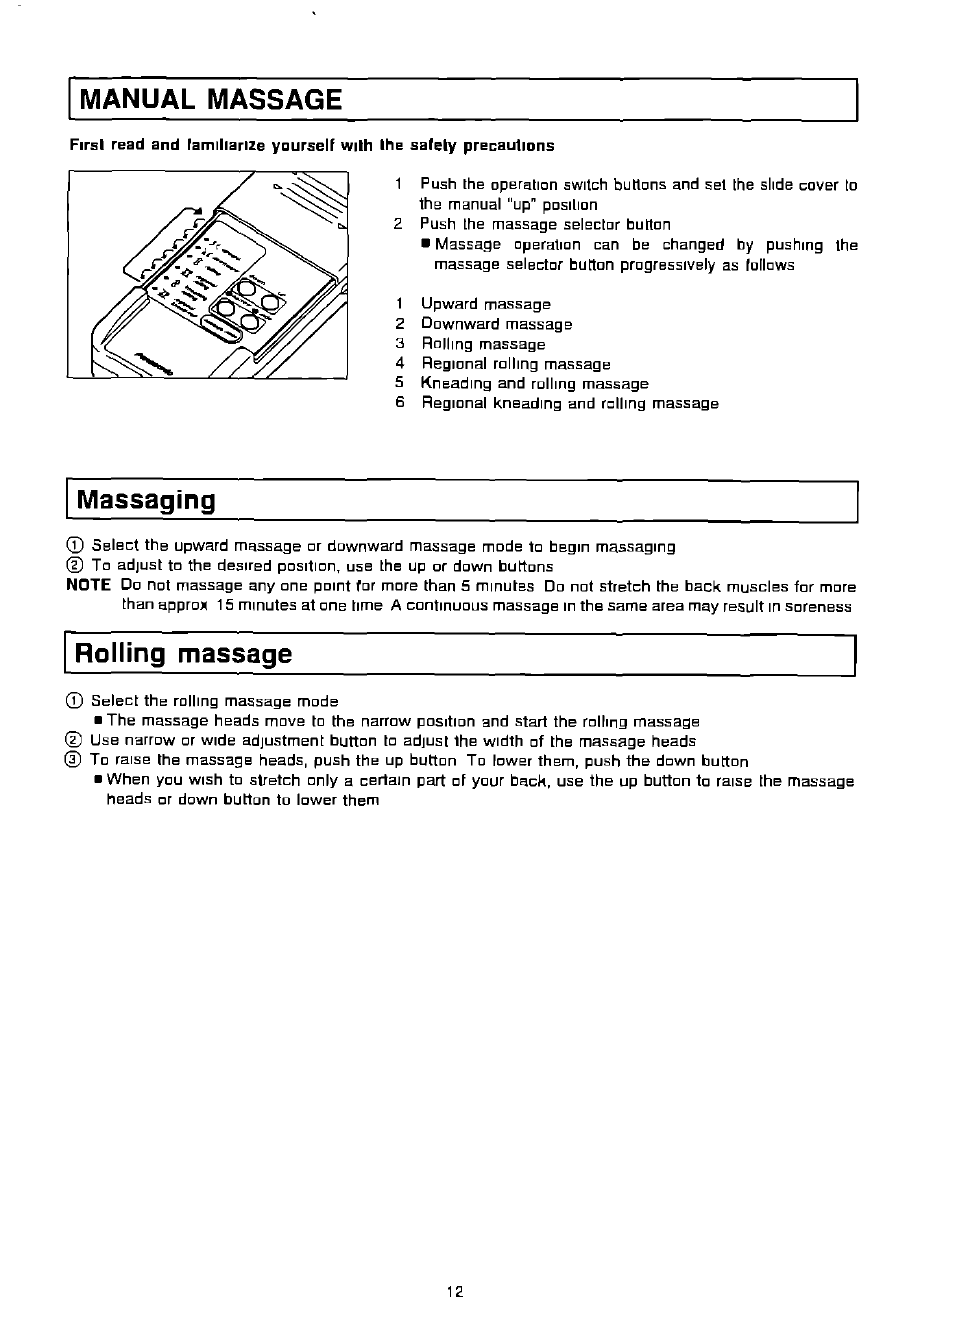 Massaging, Rolling massage, Manual massage | Panasonic EP574 User Manual | Page 12 / 48